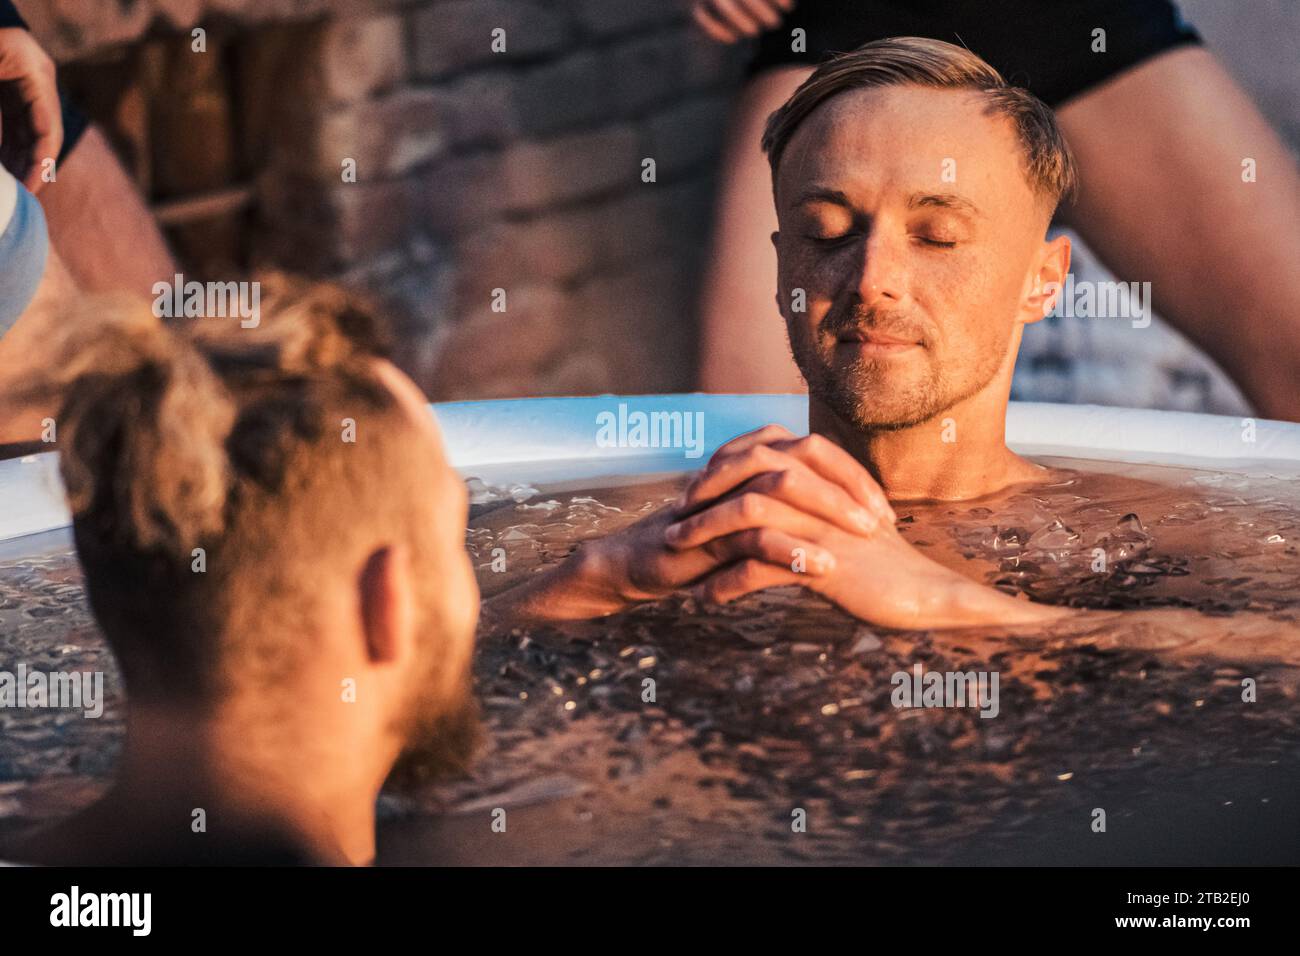 Beau garçon ou homme bain de glace dans l'eau froide parmi les glaçons. Méthode Wim Hof, thérapie par le froid, techniques de respiration, yoga, méditation Banque D'Images